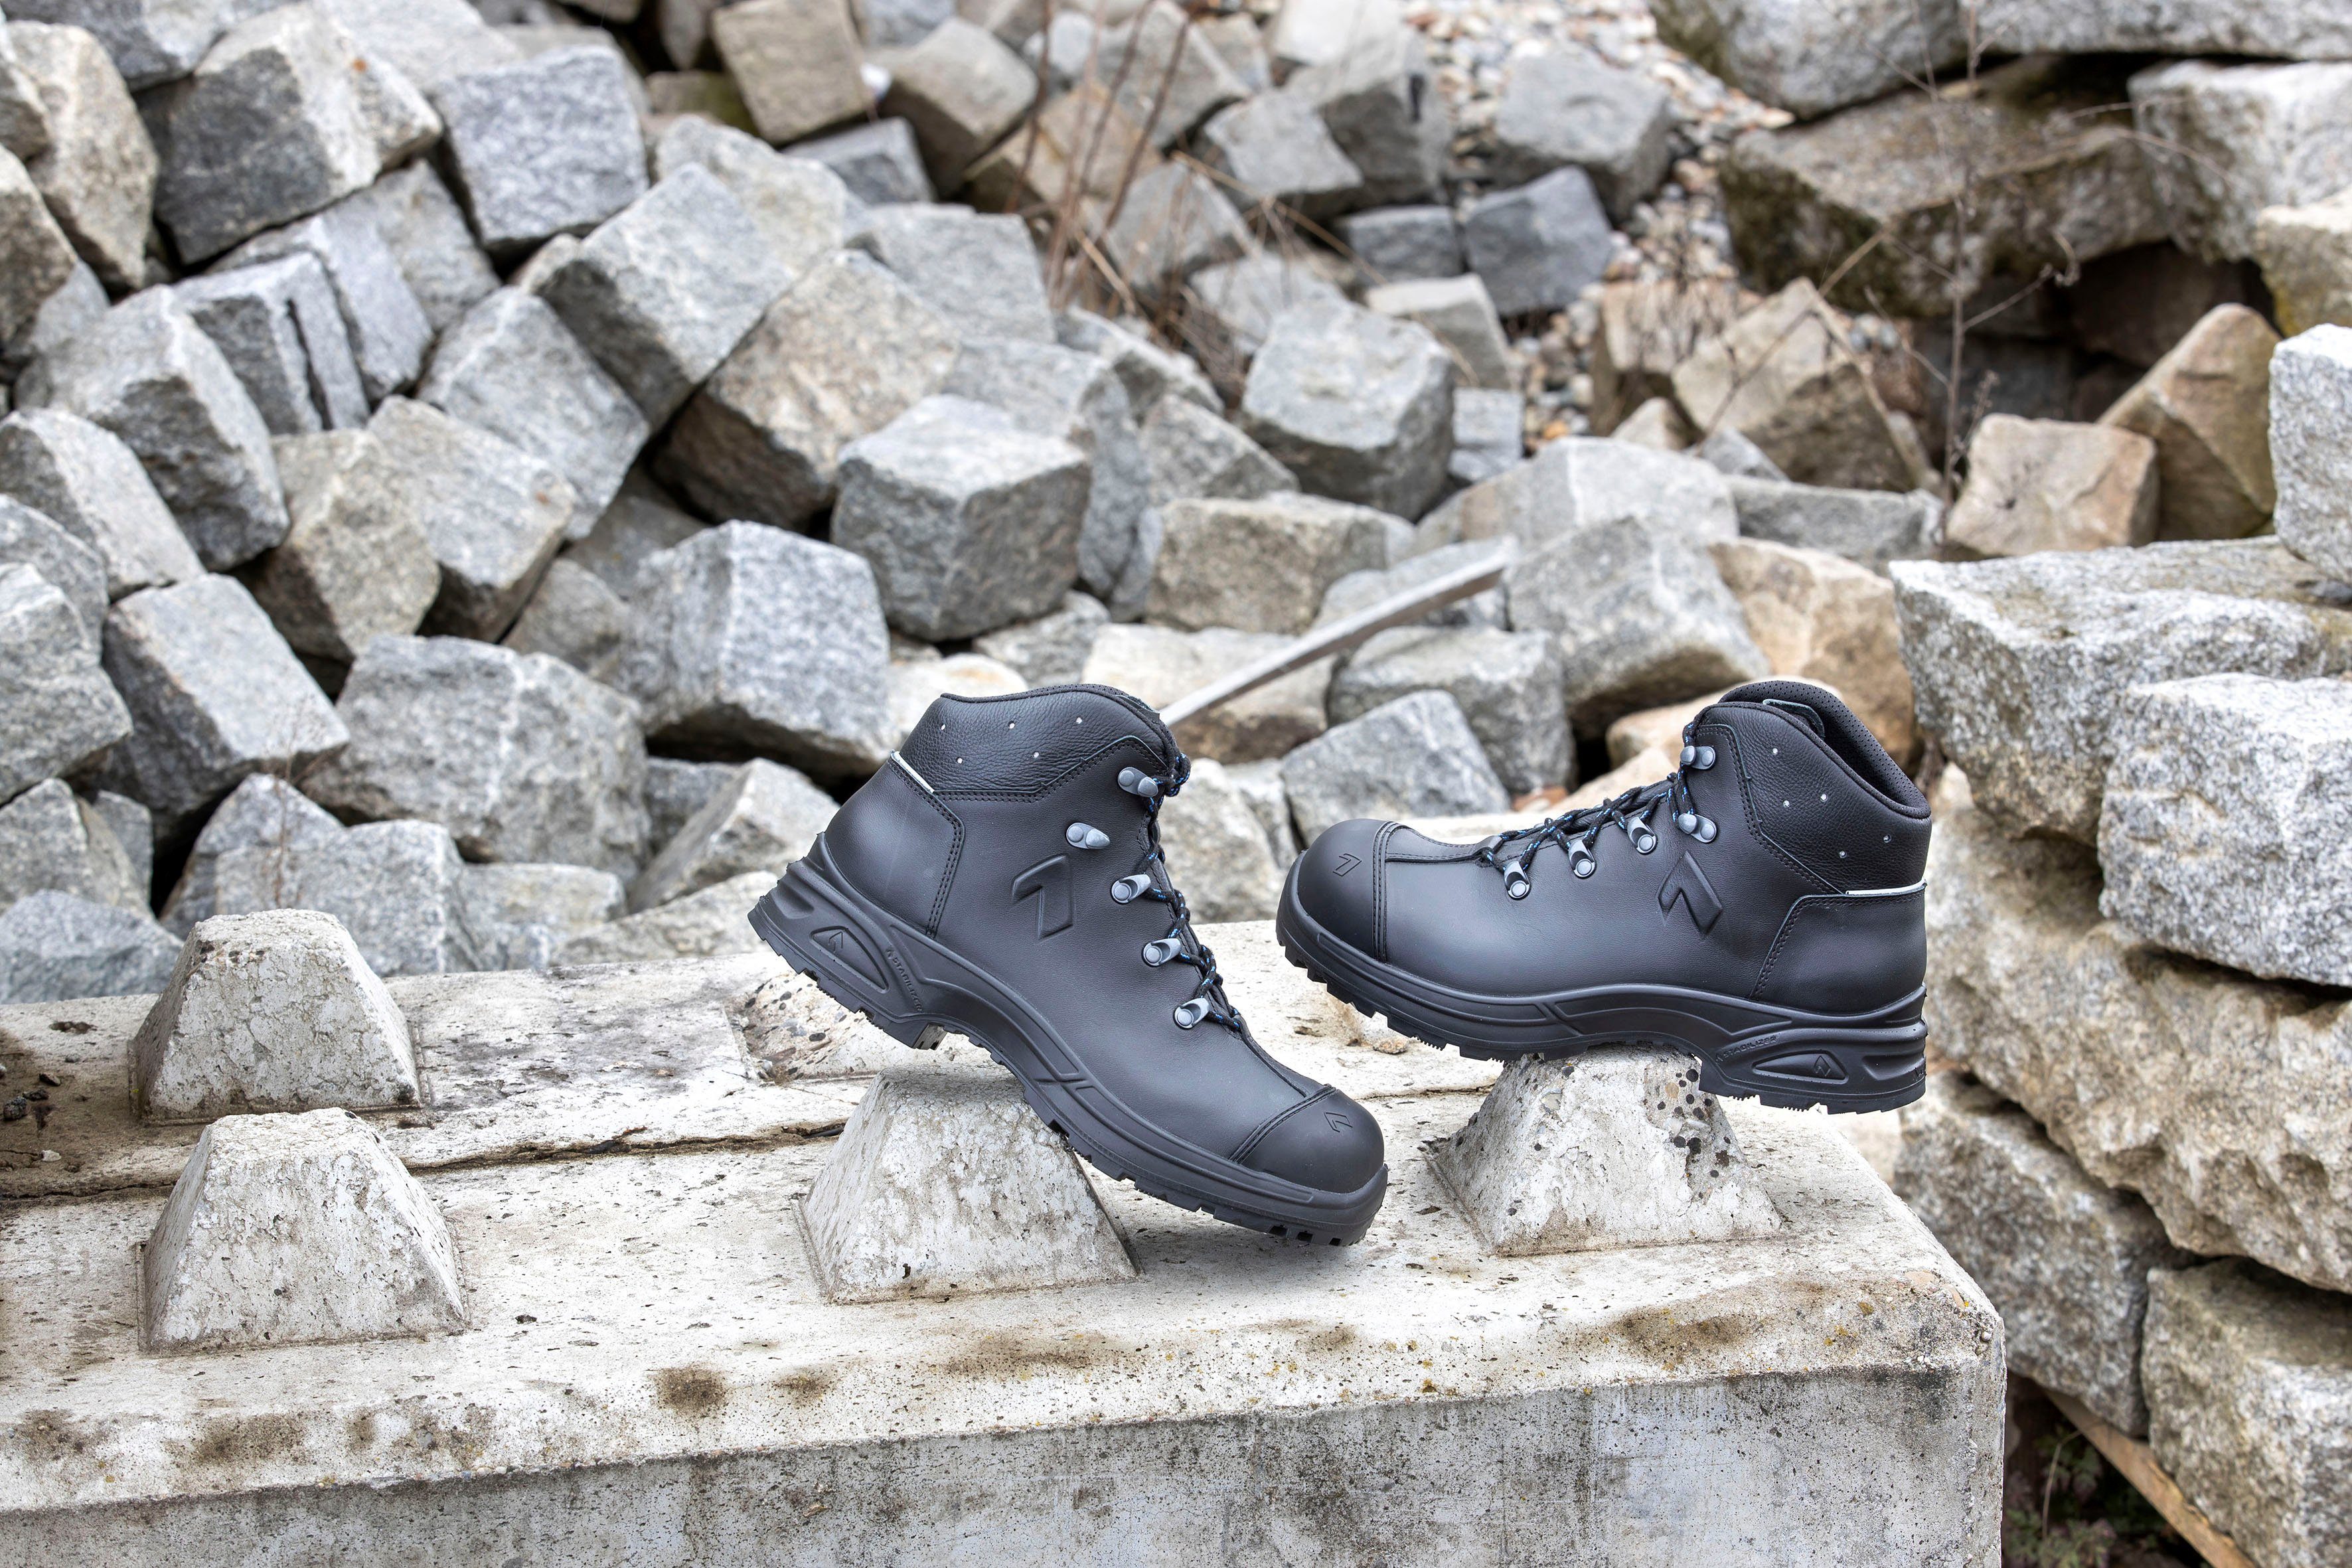 Schuhe Sicherheitsschuhe haix Airpower XR26 Sicherheitsstiefel für orthopädische Einlagen zugelassen, Sicherheitsklasse S3